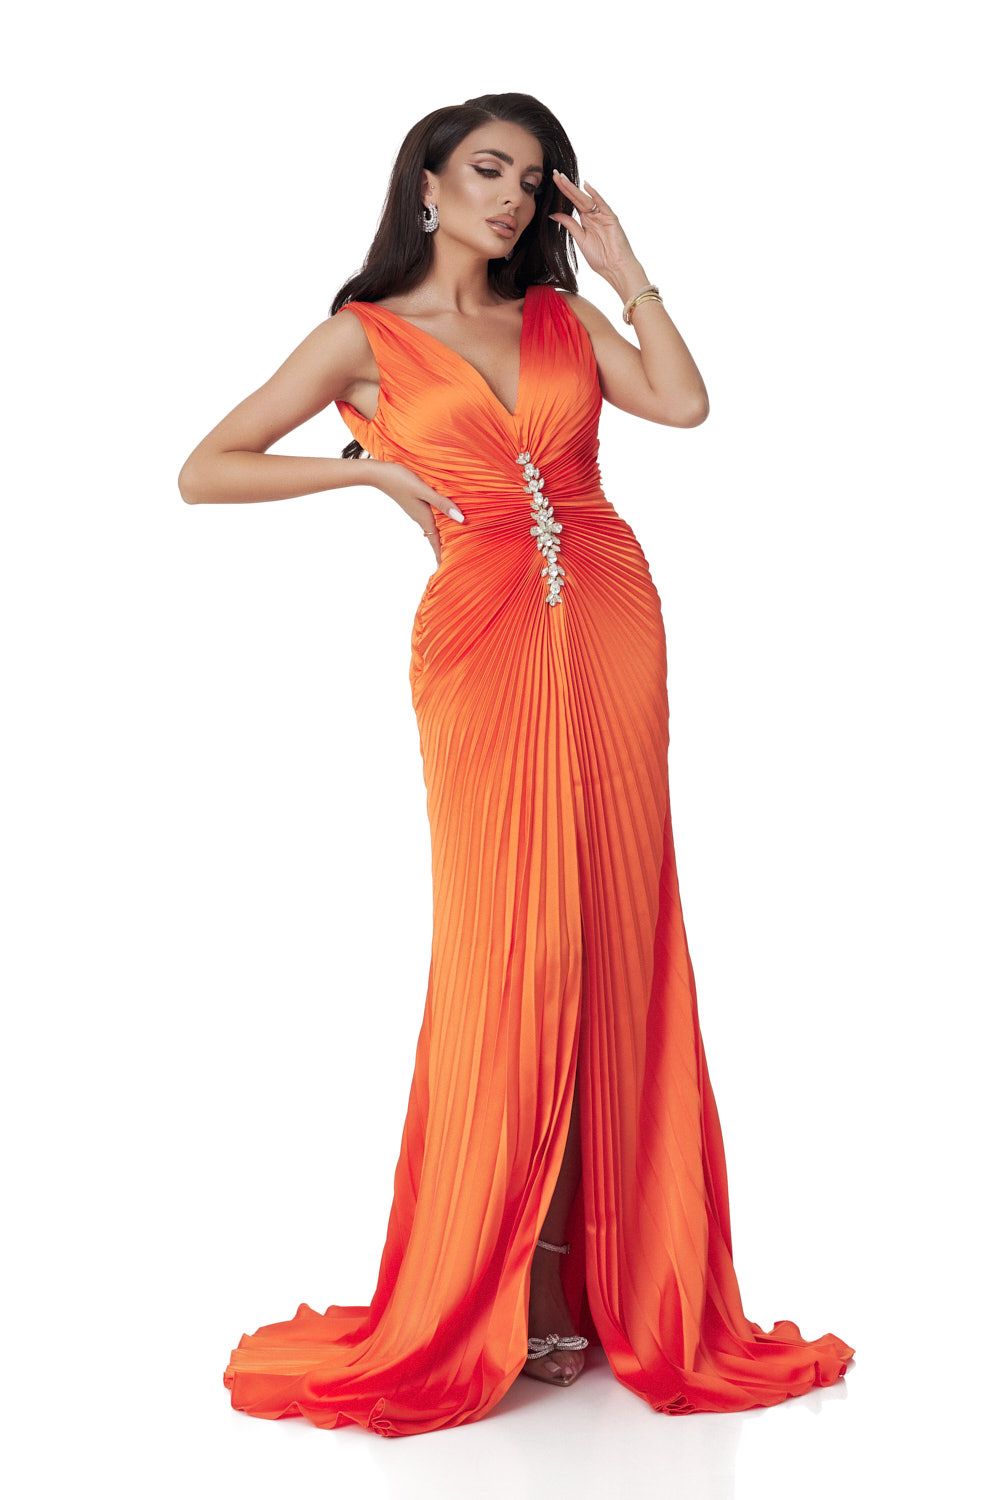 Long orange satin veil dress for women by Omana Bogas